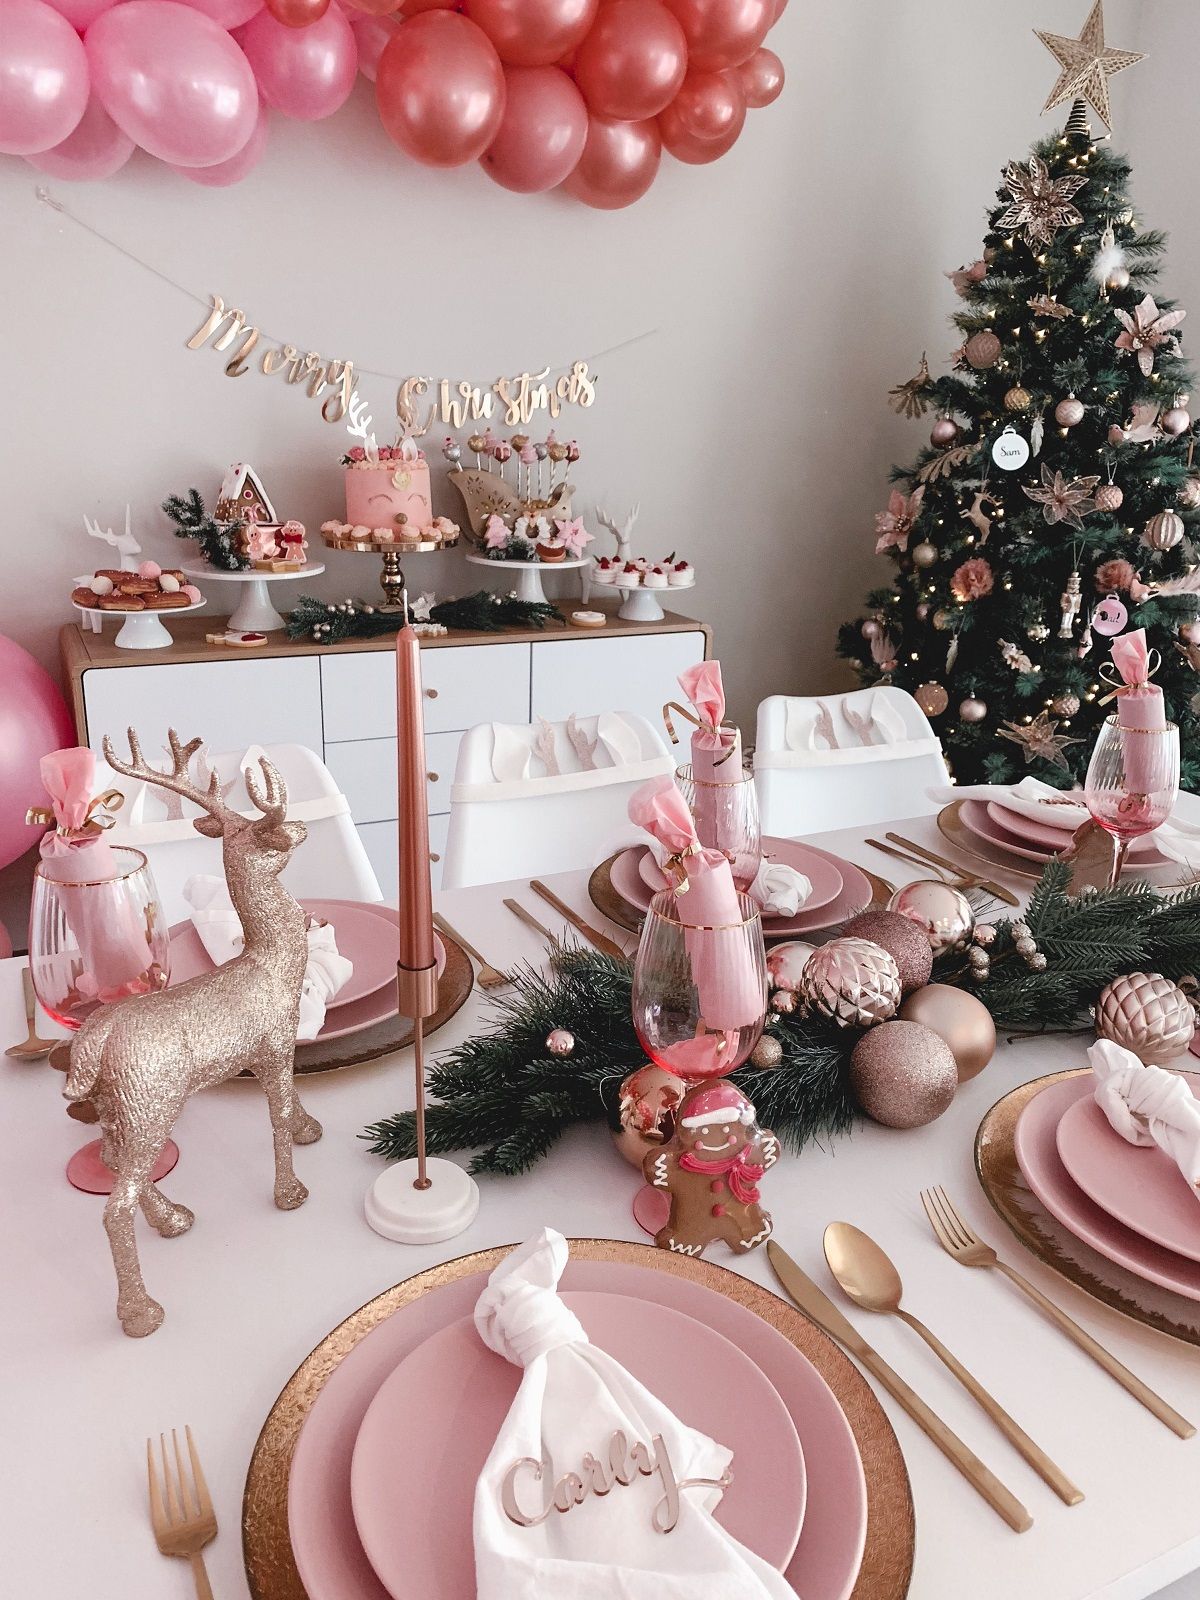 Décoration Noël pastel : idées et conseils pour un décor festif tout en délicatesse